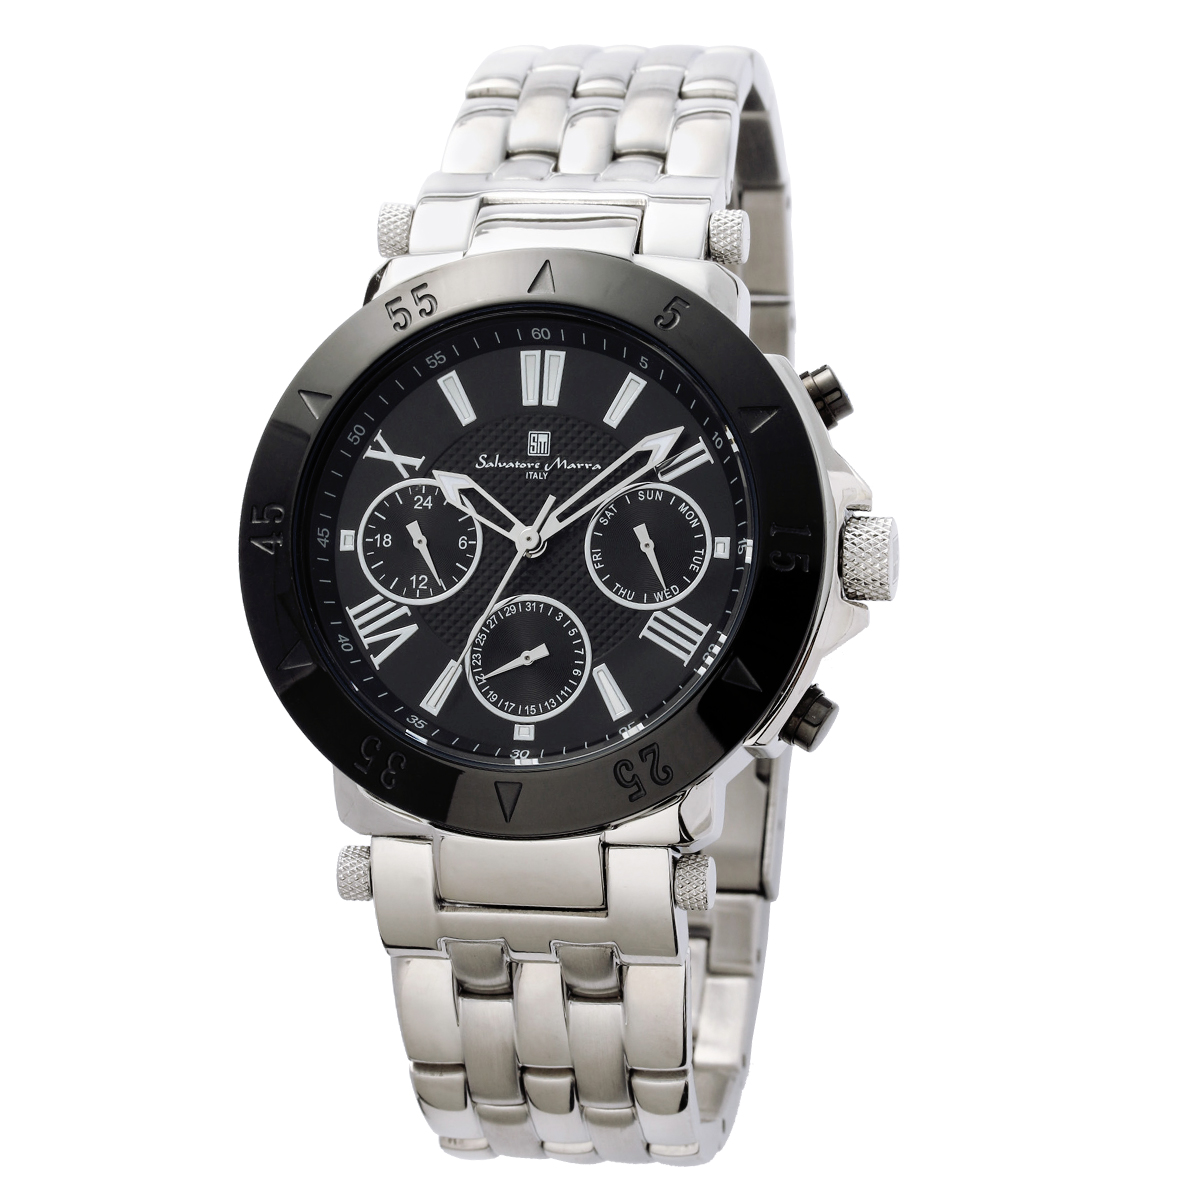 サルバトーレマーラ Salavatore Marra 腕時計 SM22108 SSBK クオーツ メンズ腕時計 ステンレスベルト アナログ表示腕時計 時計 ブランド